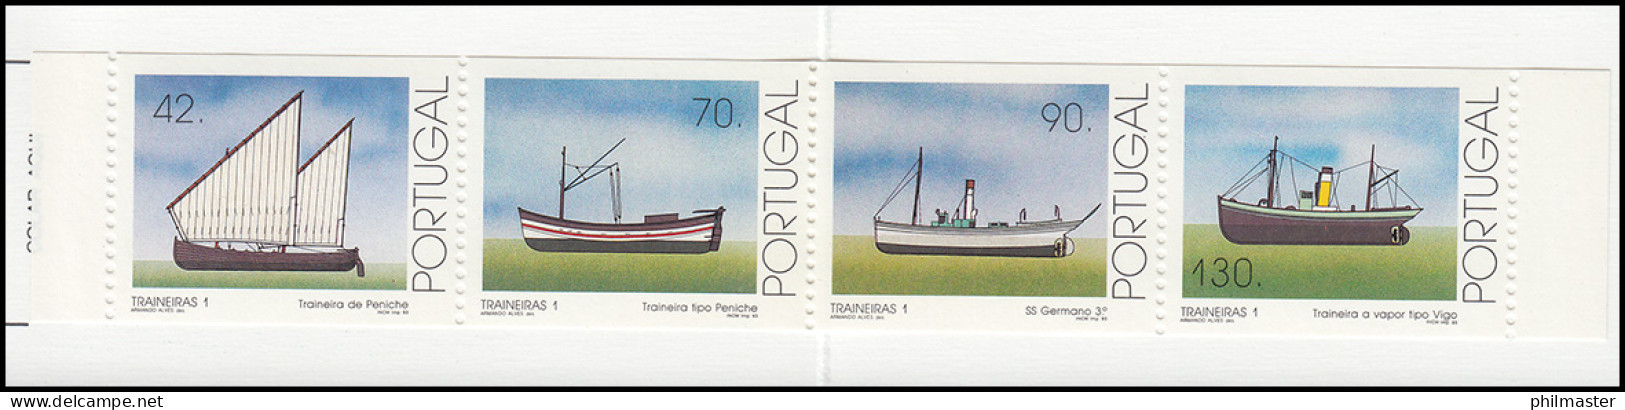 Portugal-Markenheftchen 10 Küstenfischerei Schleppnetzschiffe 1993, Postfrisch - Libretti